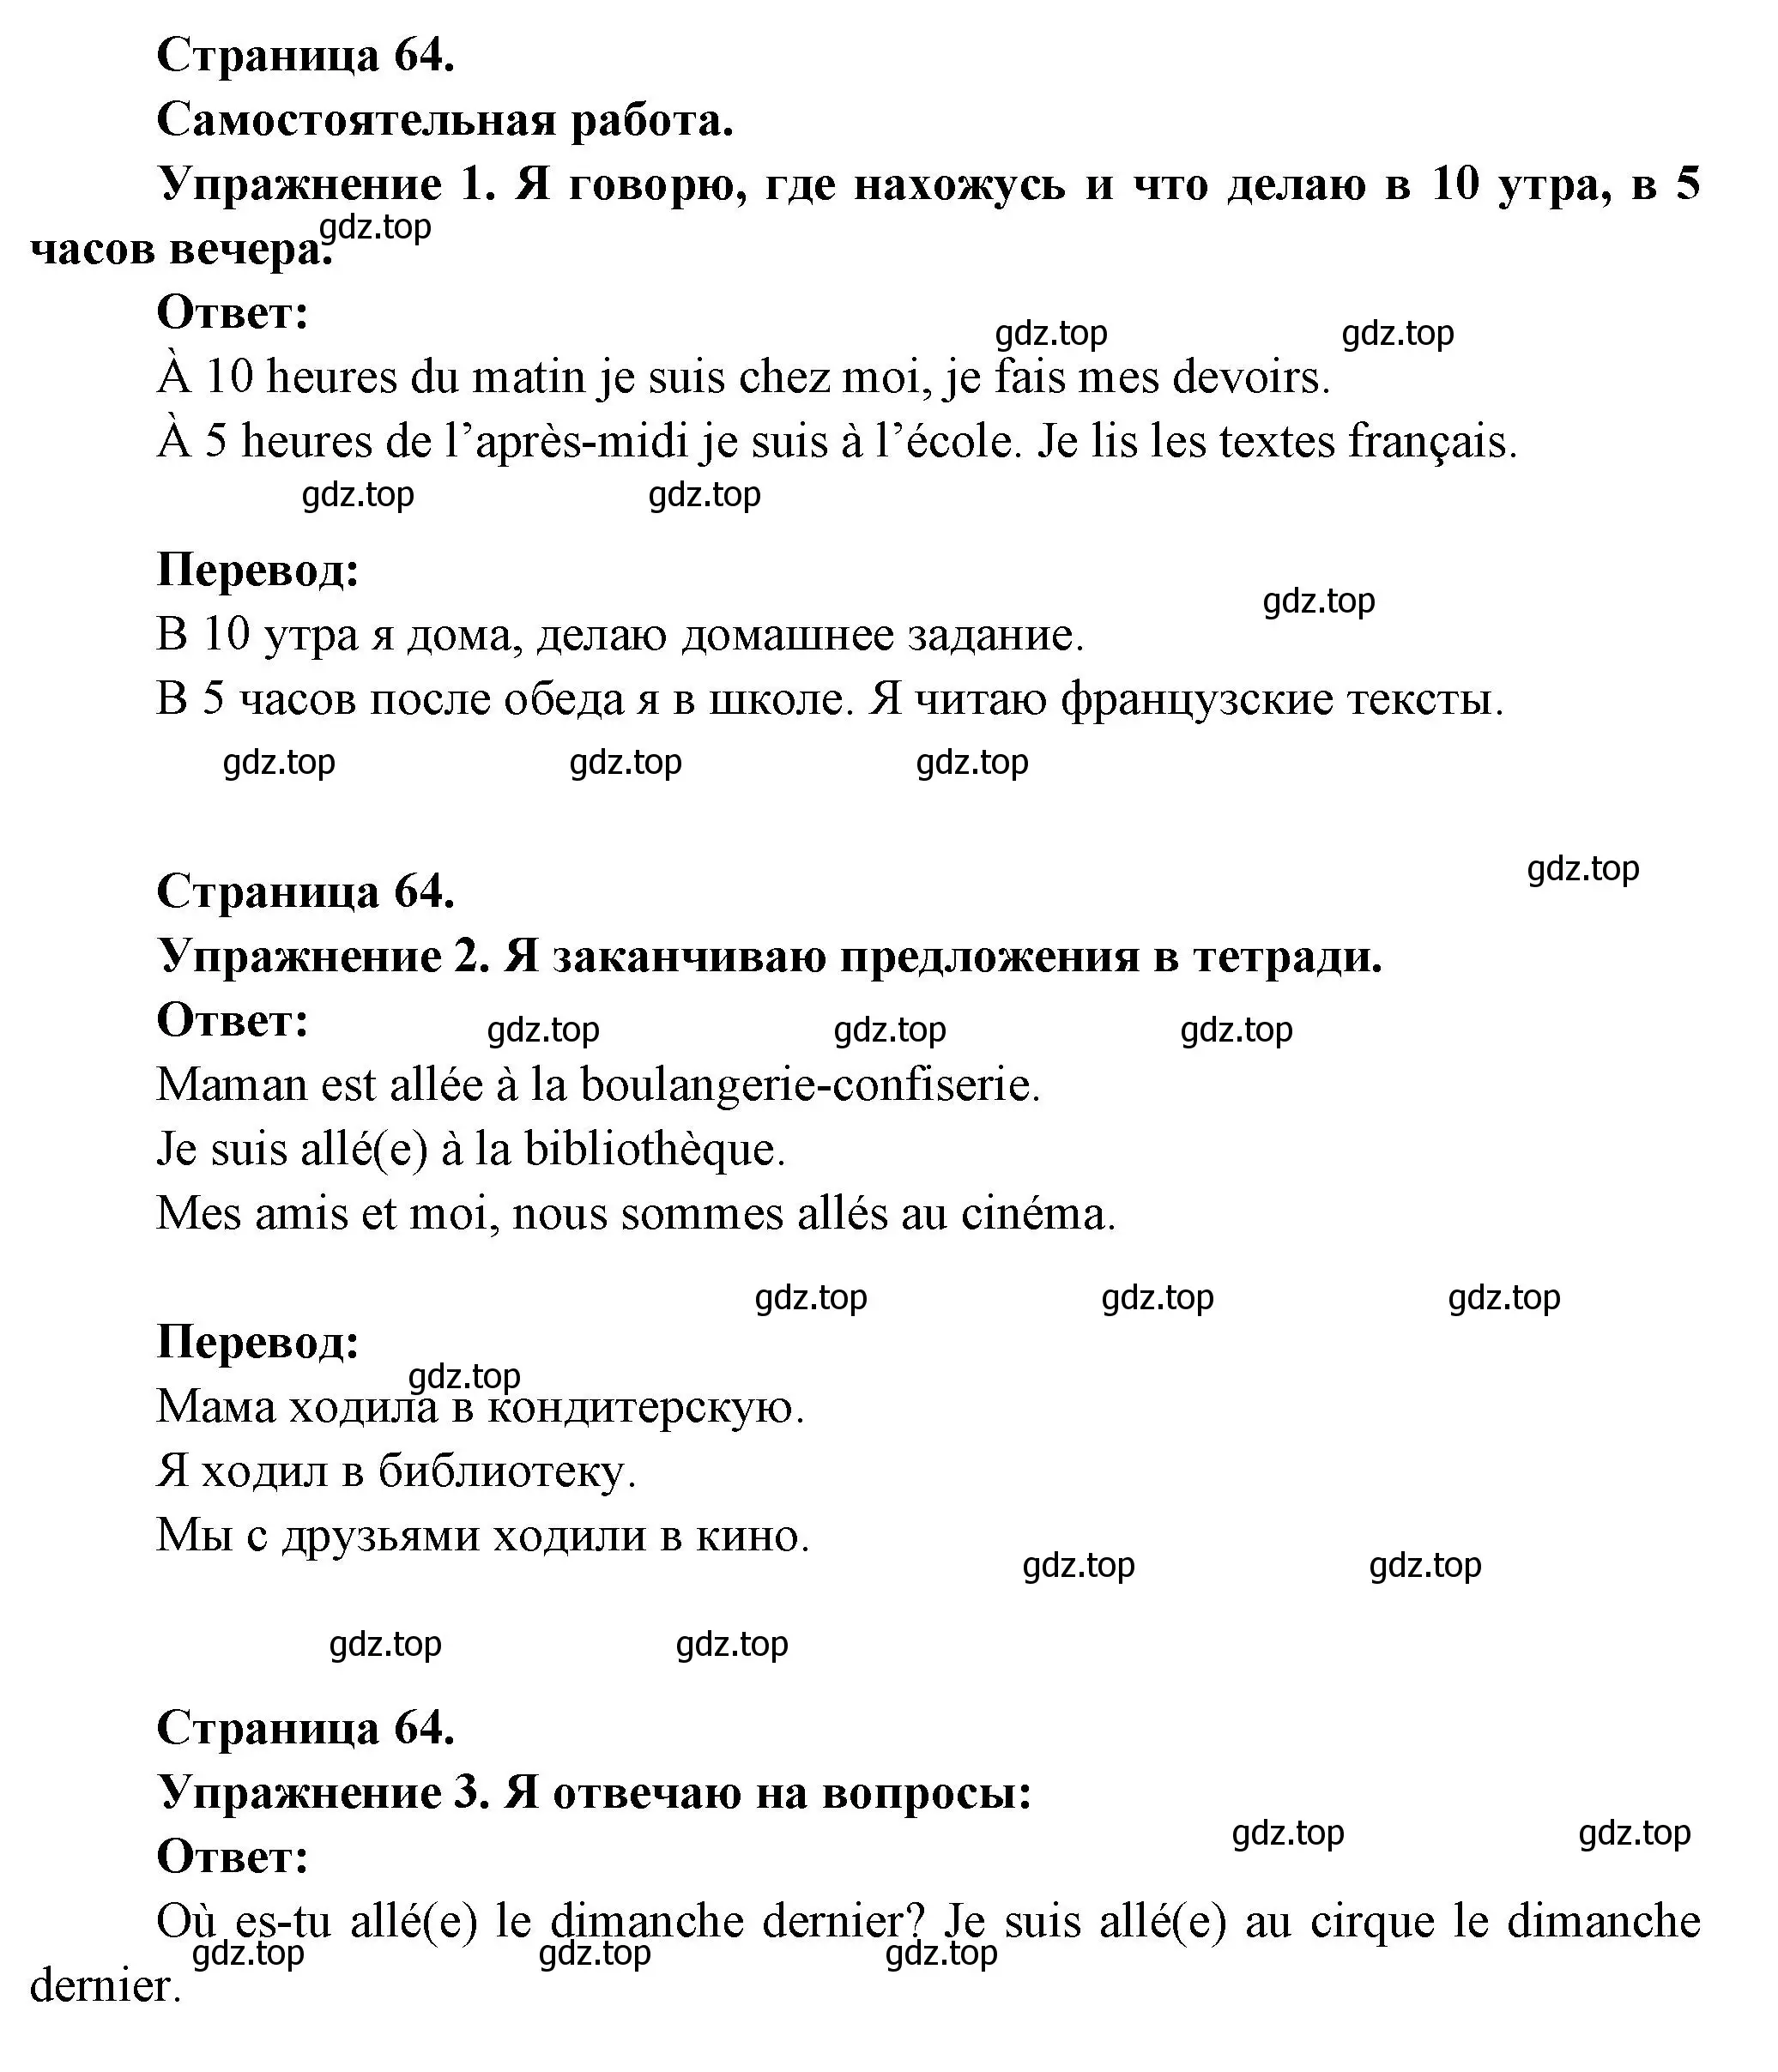 Решение  64 (страница 64) гдз по французскому языку 3 класс Кулигин, Кирьянова, учебник 2 часть